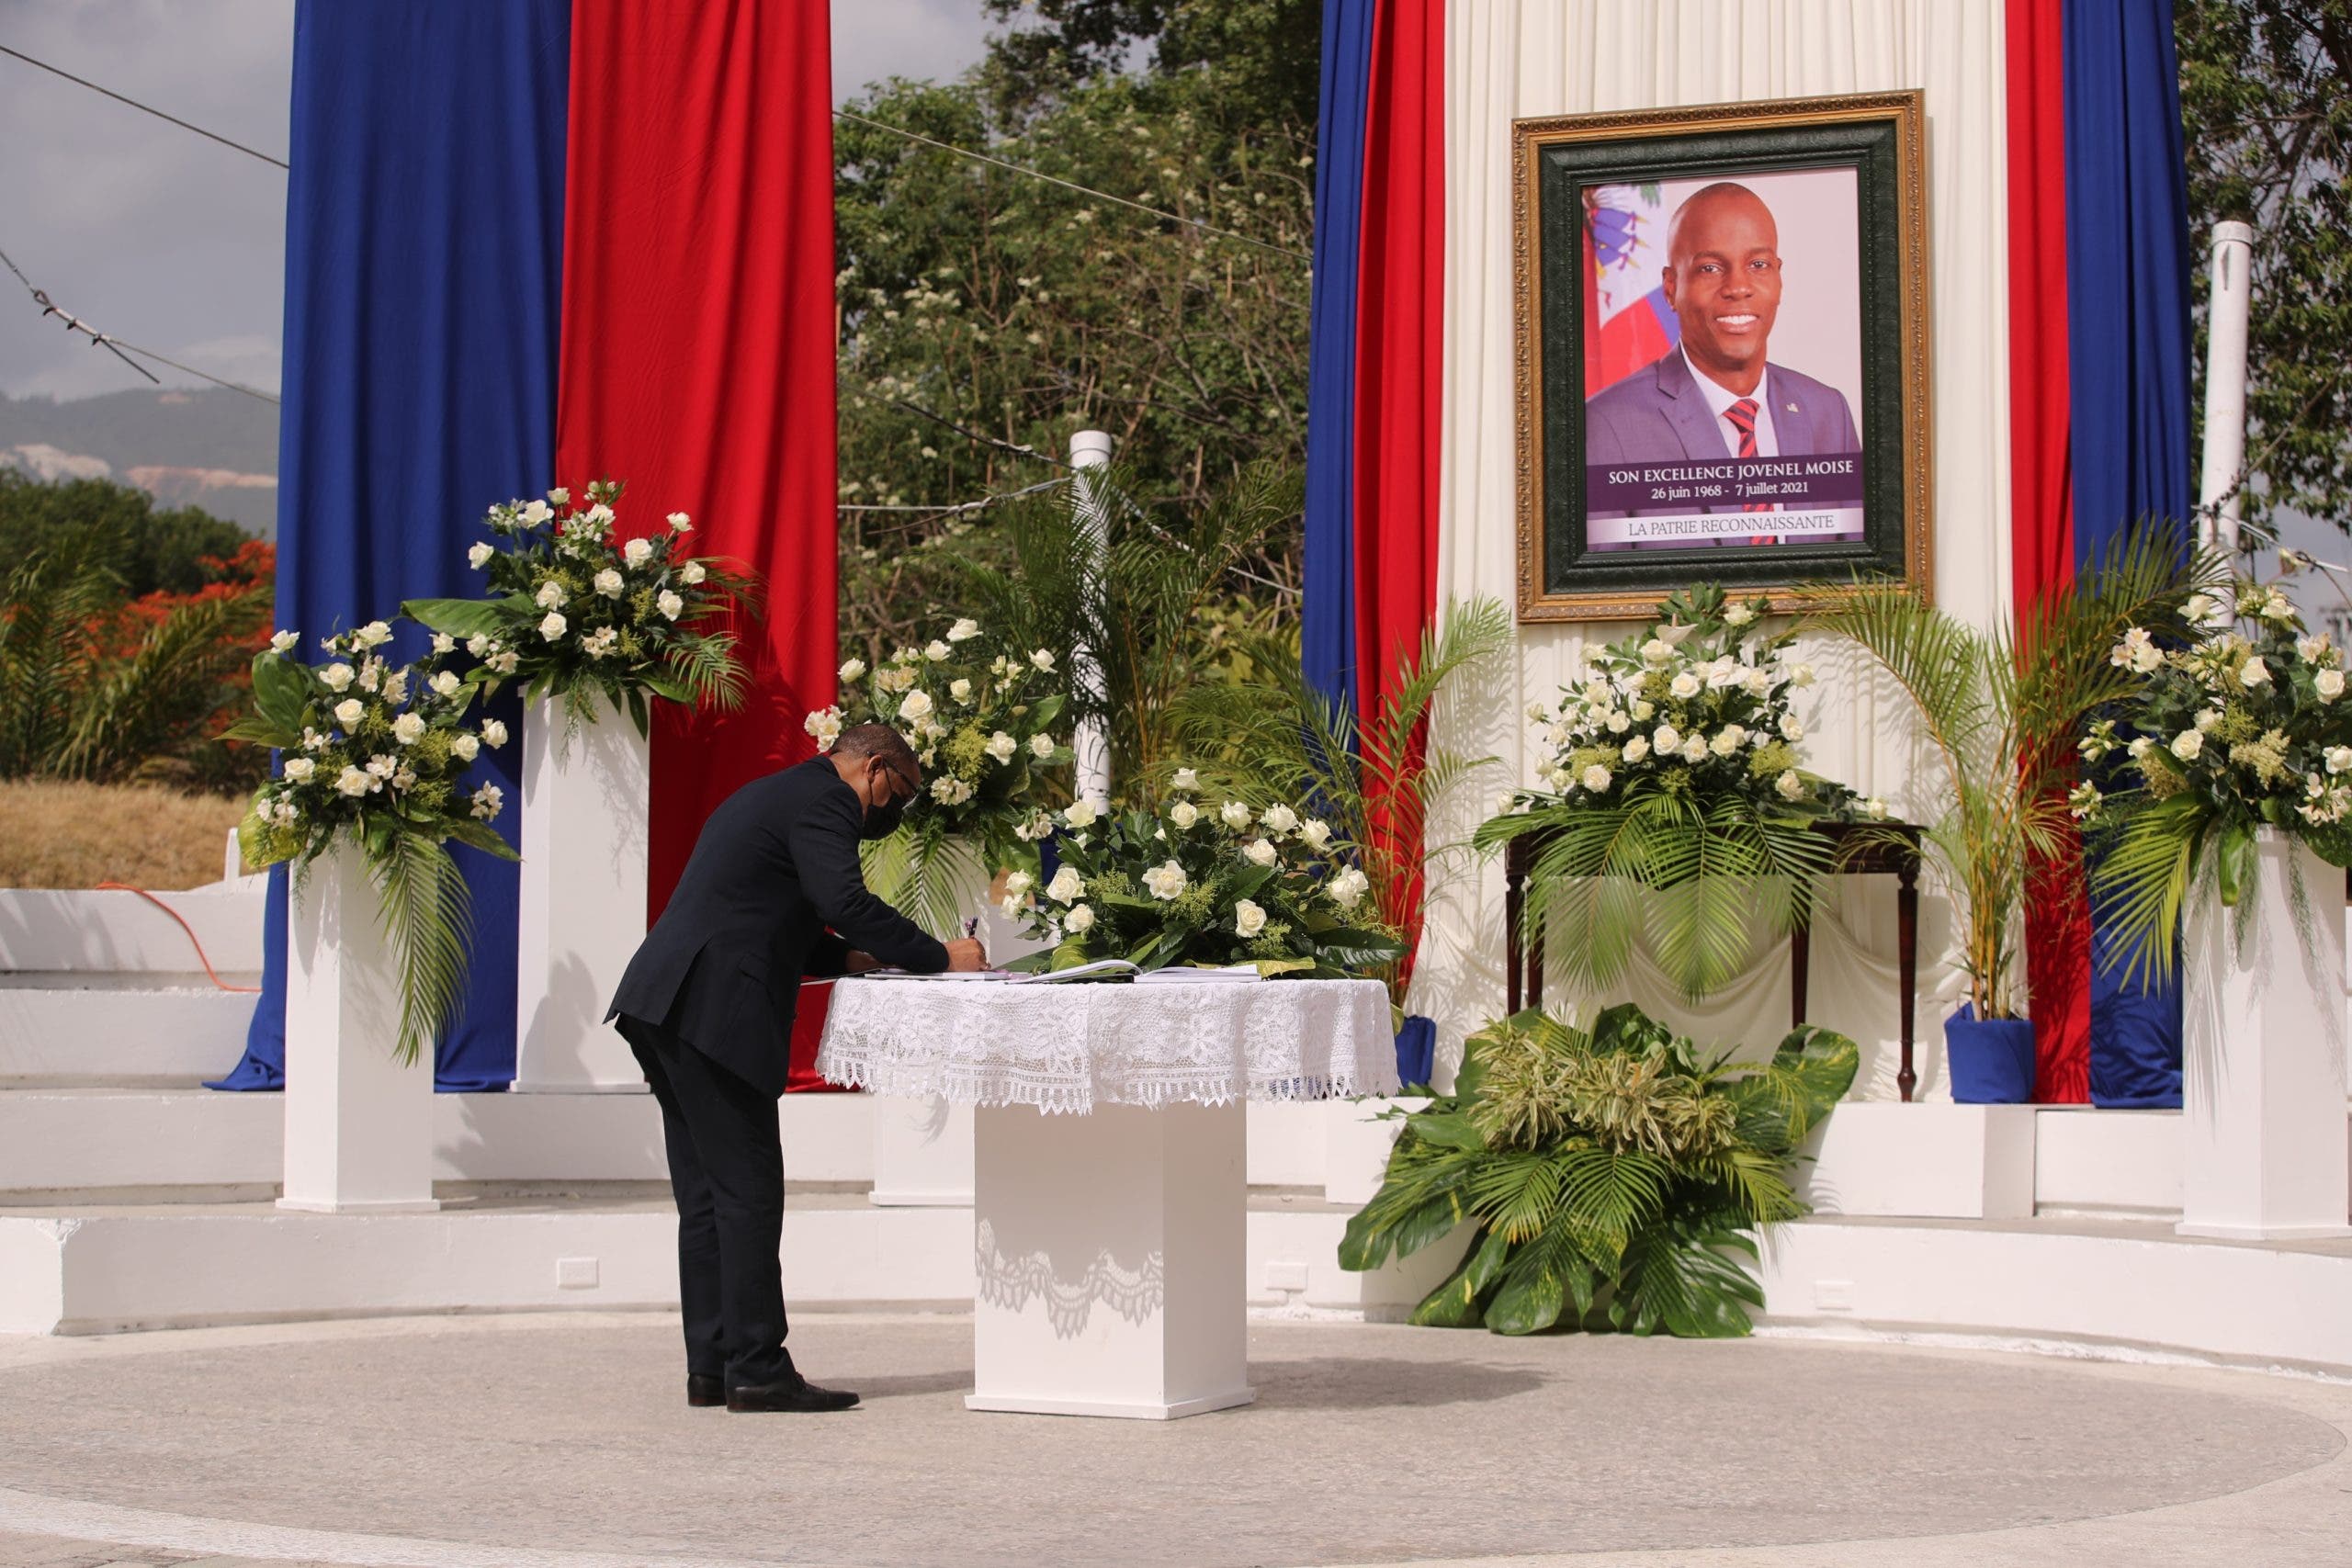 Embajada de Haití en RD invita al público a misa en honor Jovenel Moise